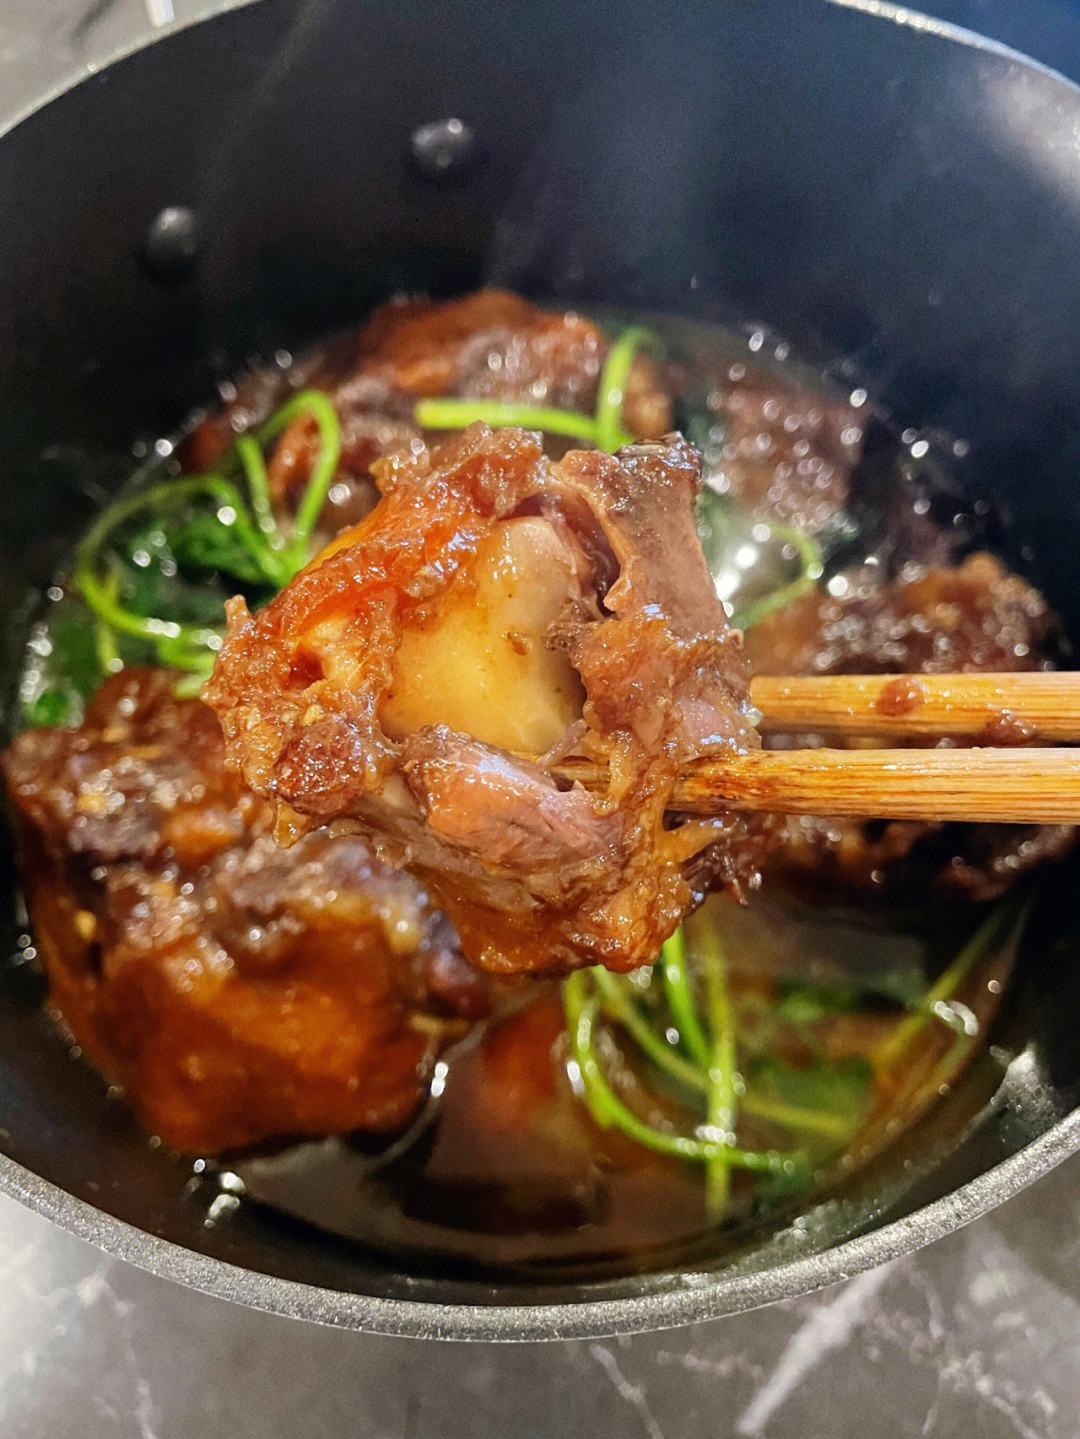 大锅炖菜食谱图片